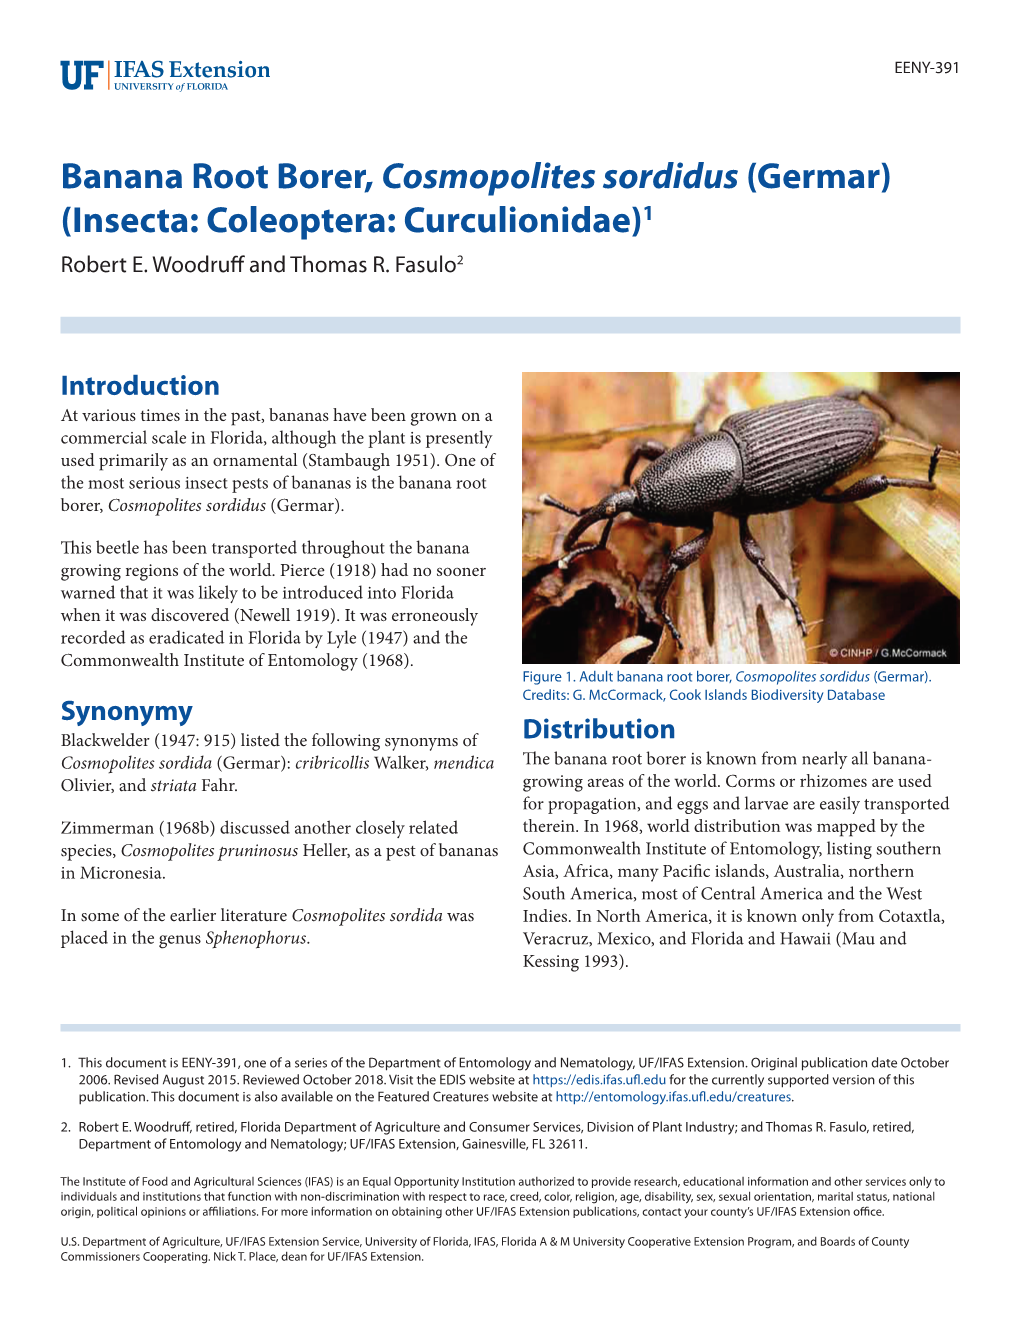 Banana Root Borer, Cosmopolites Sordidus (Germar) (Insecta: Coleoptera: Curculionidae)1 Robert E